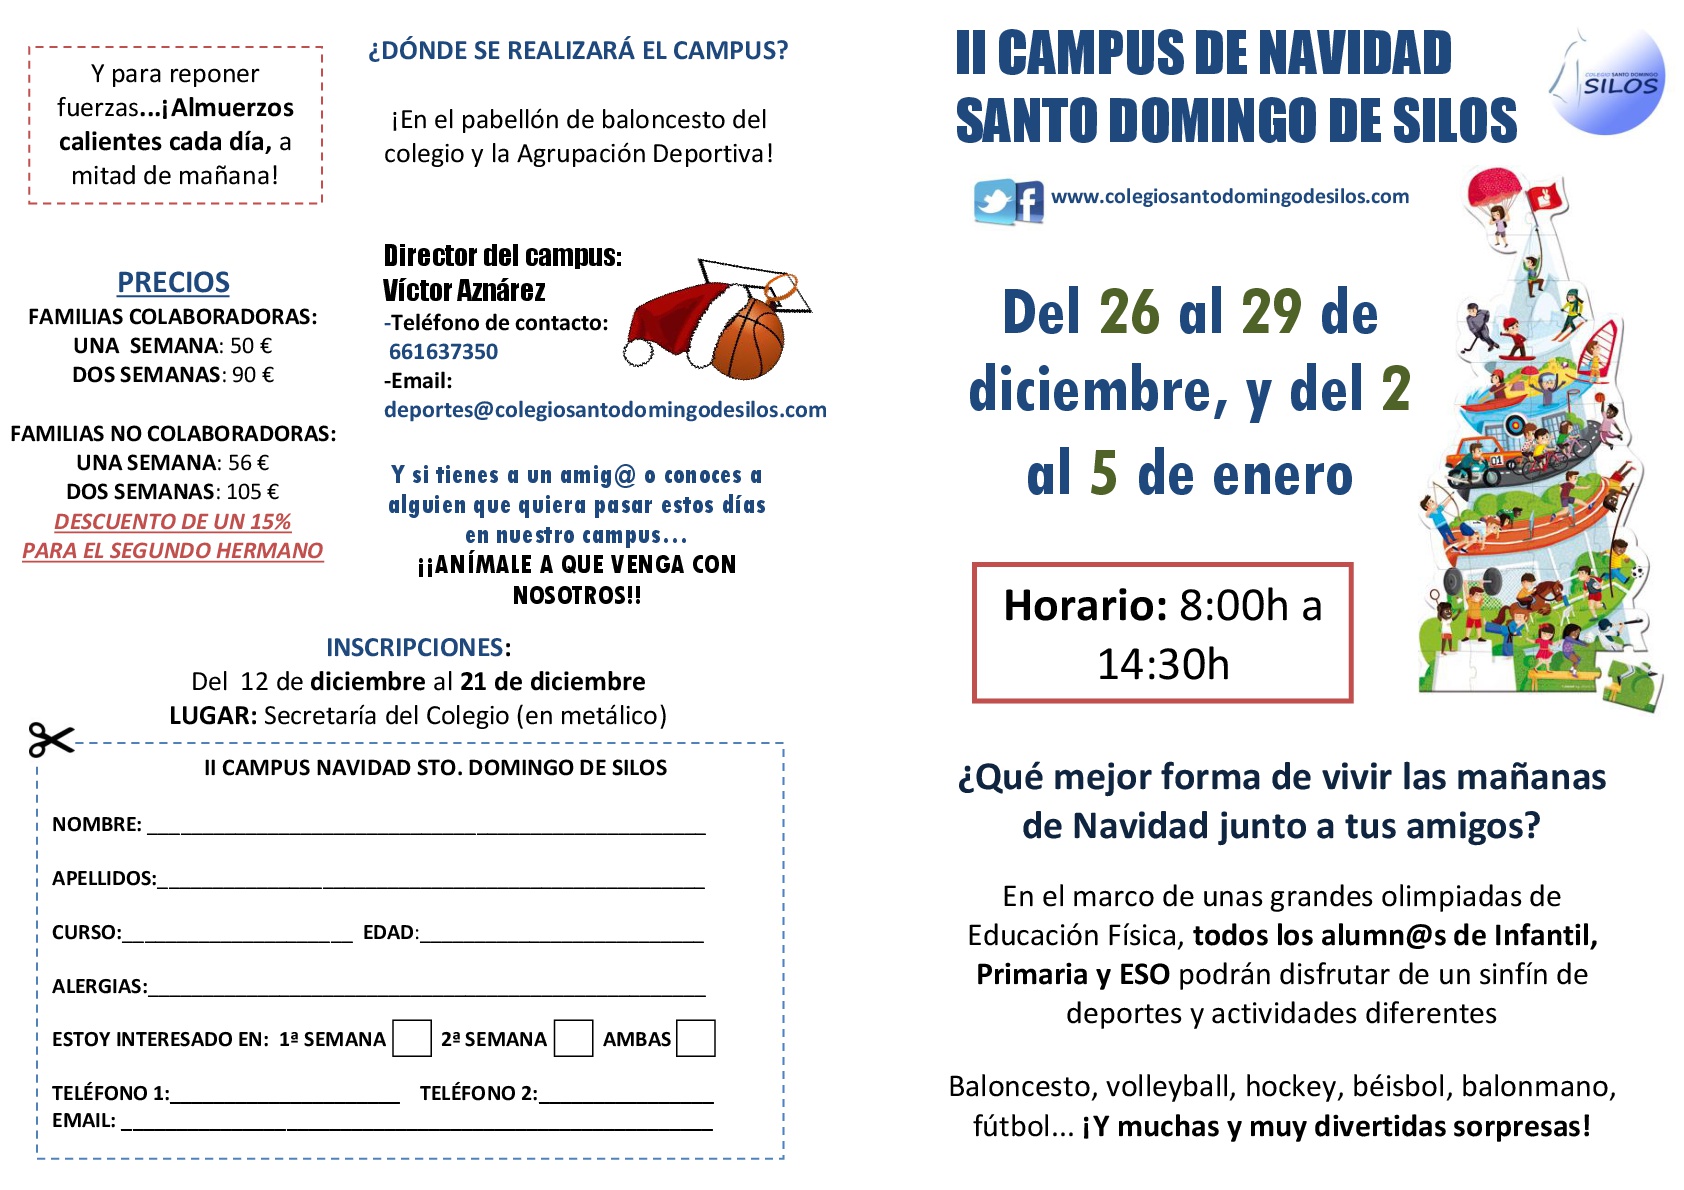 ¡II Campus de Navidad Santo Domingo de Silos!